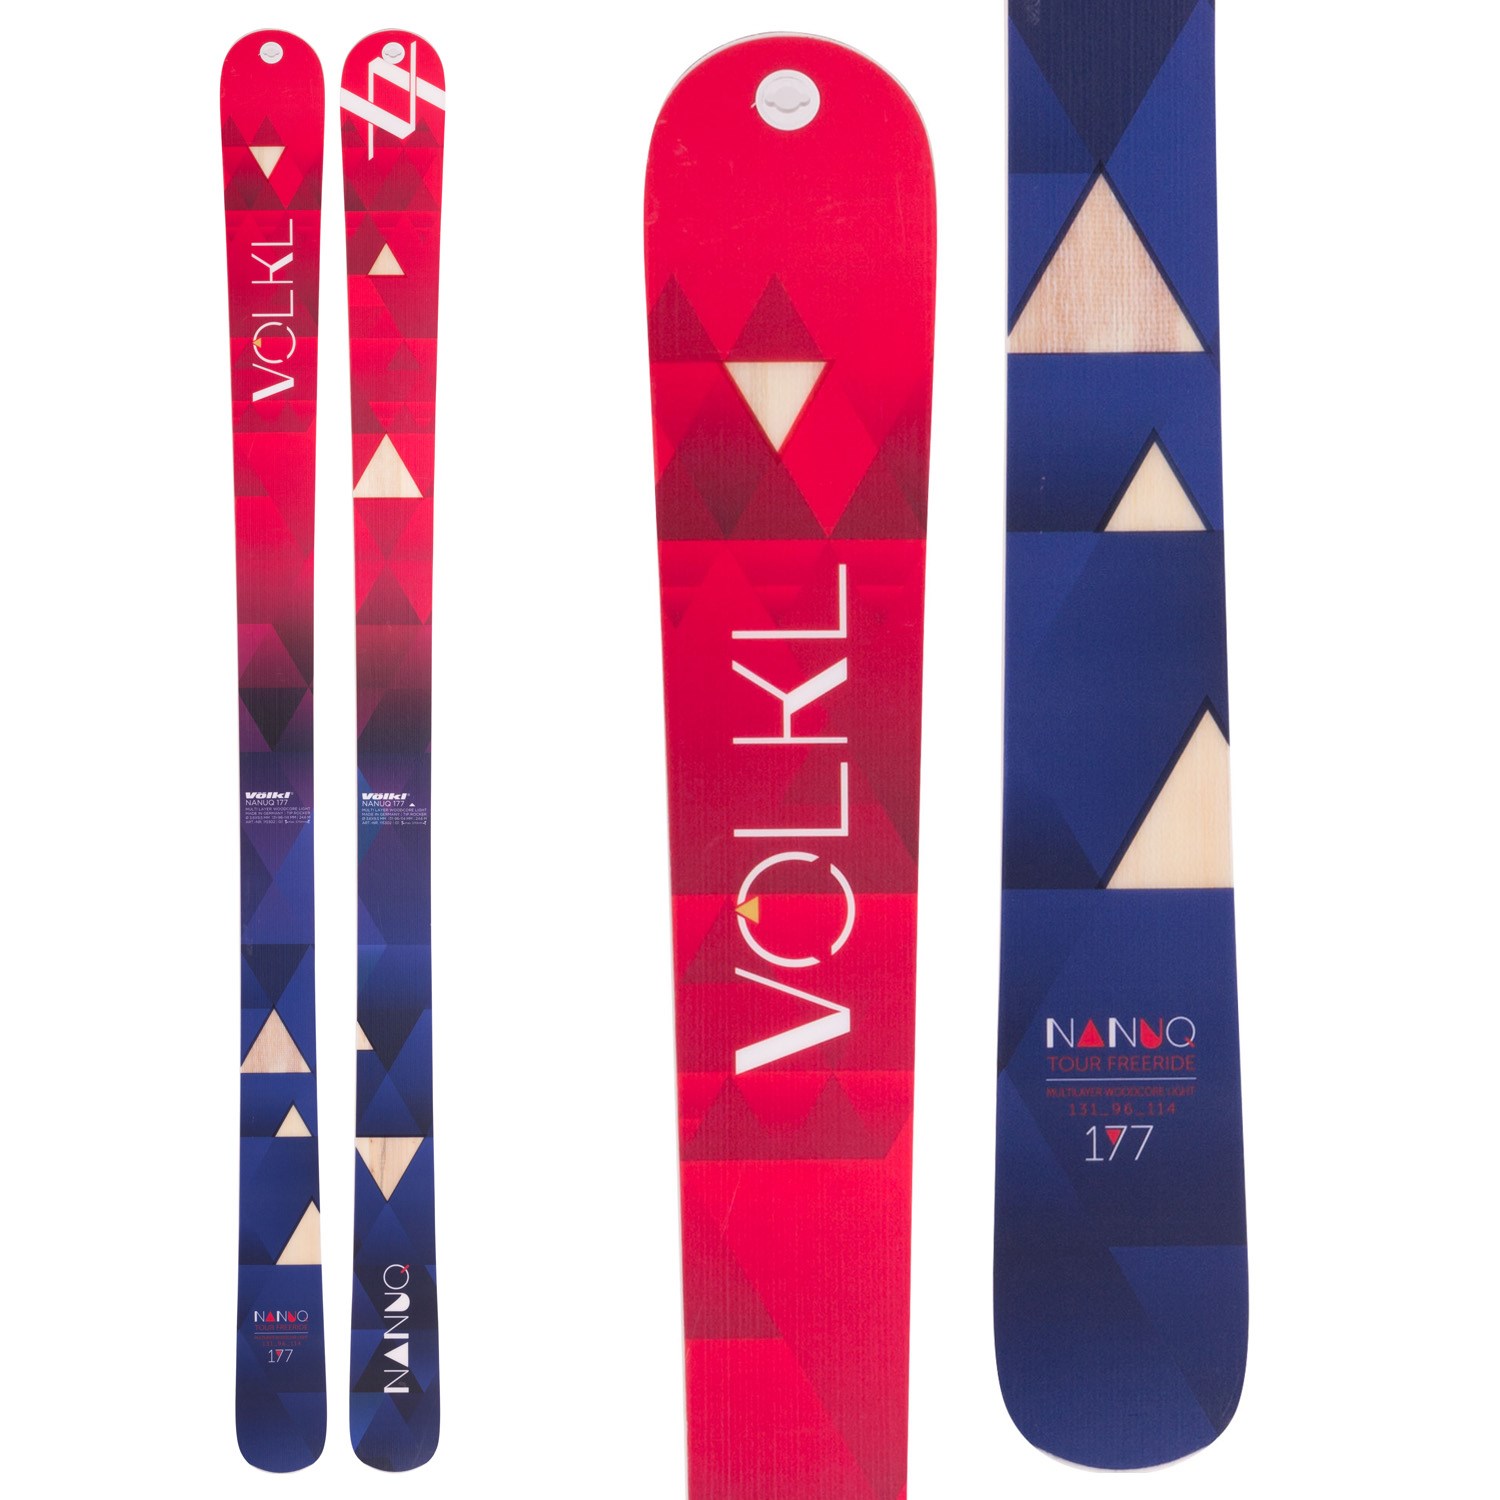 Volkl Nanuq Skis 2017 | evo